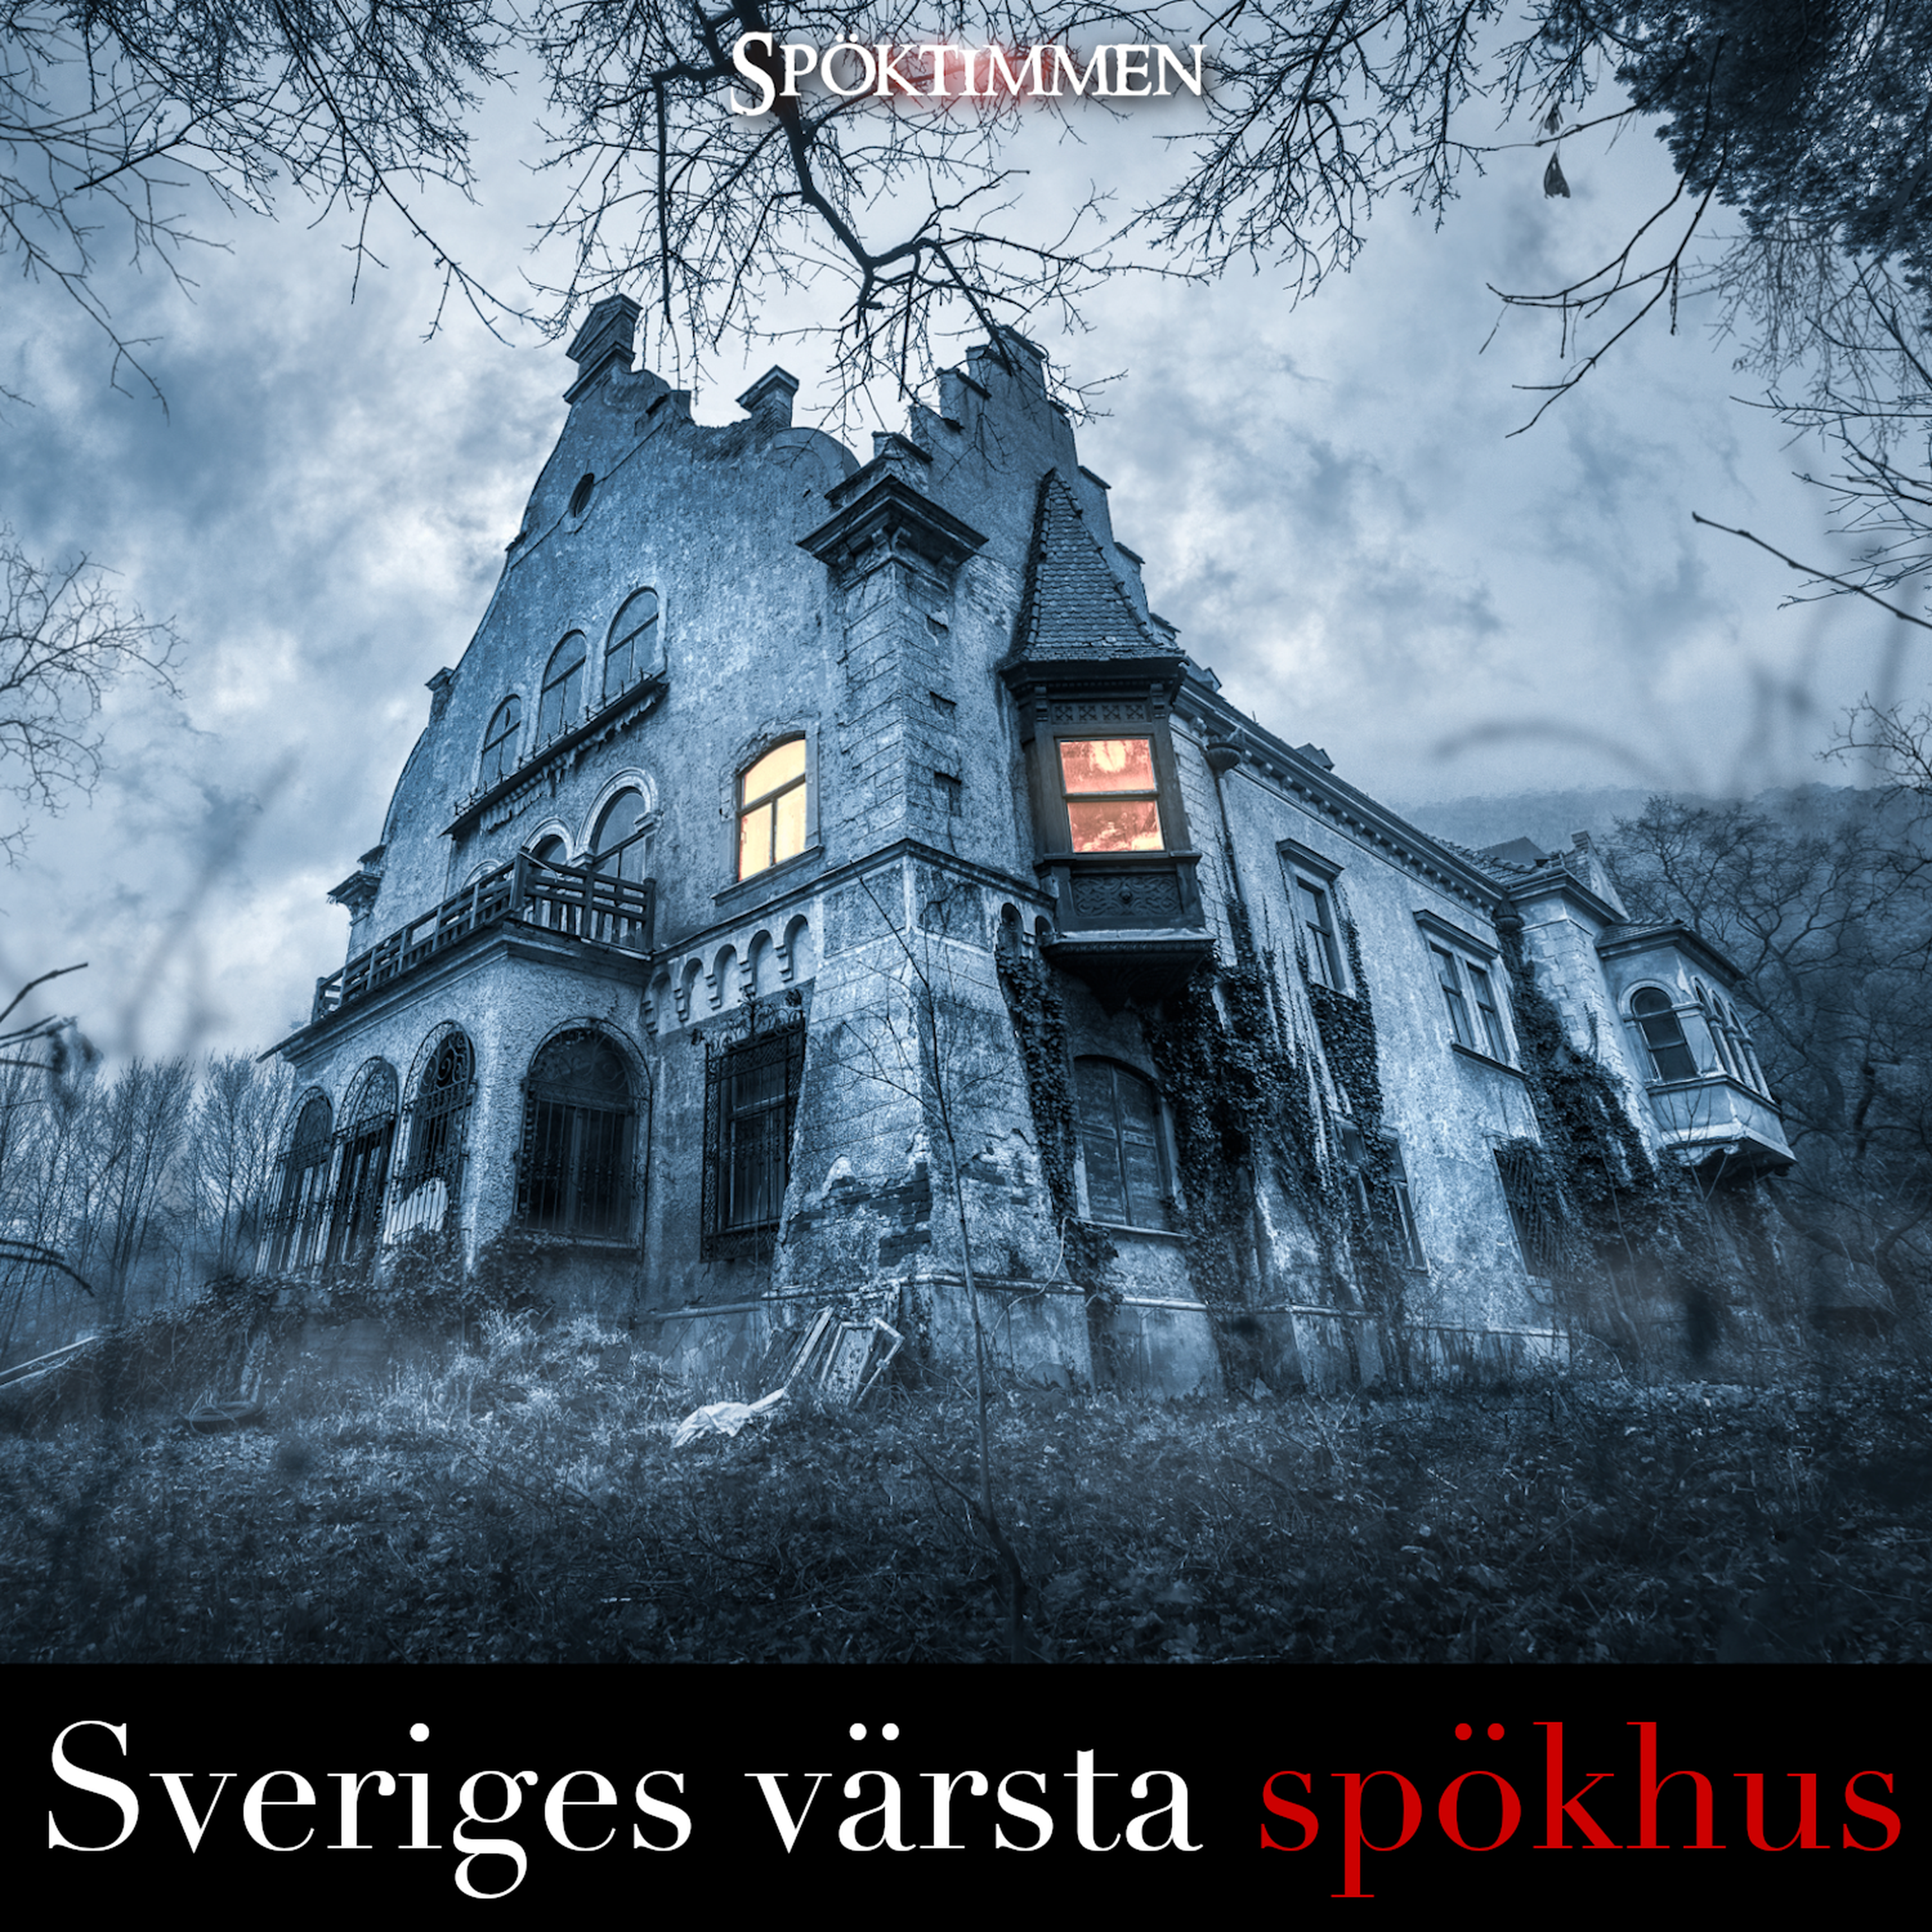 EXTRA: Sveriges värsta spökhus